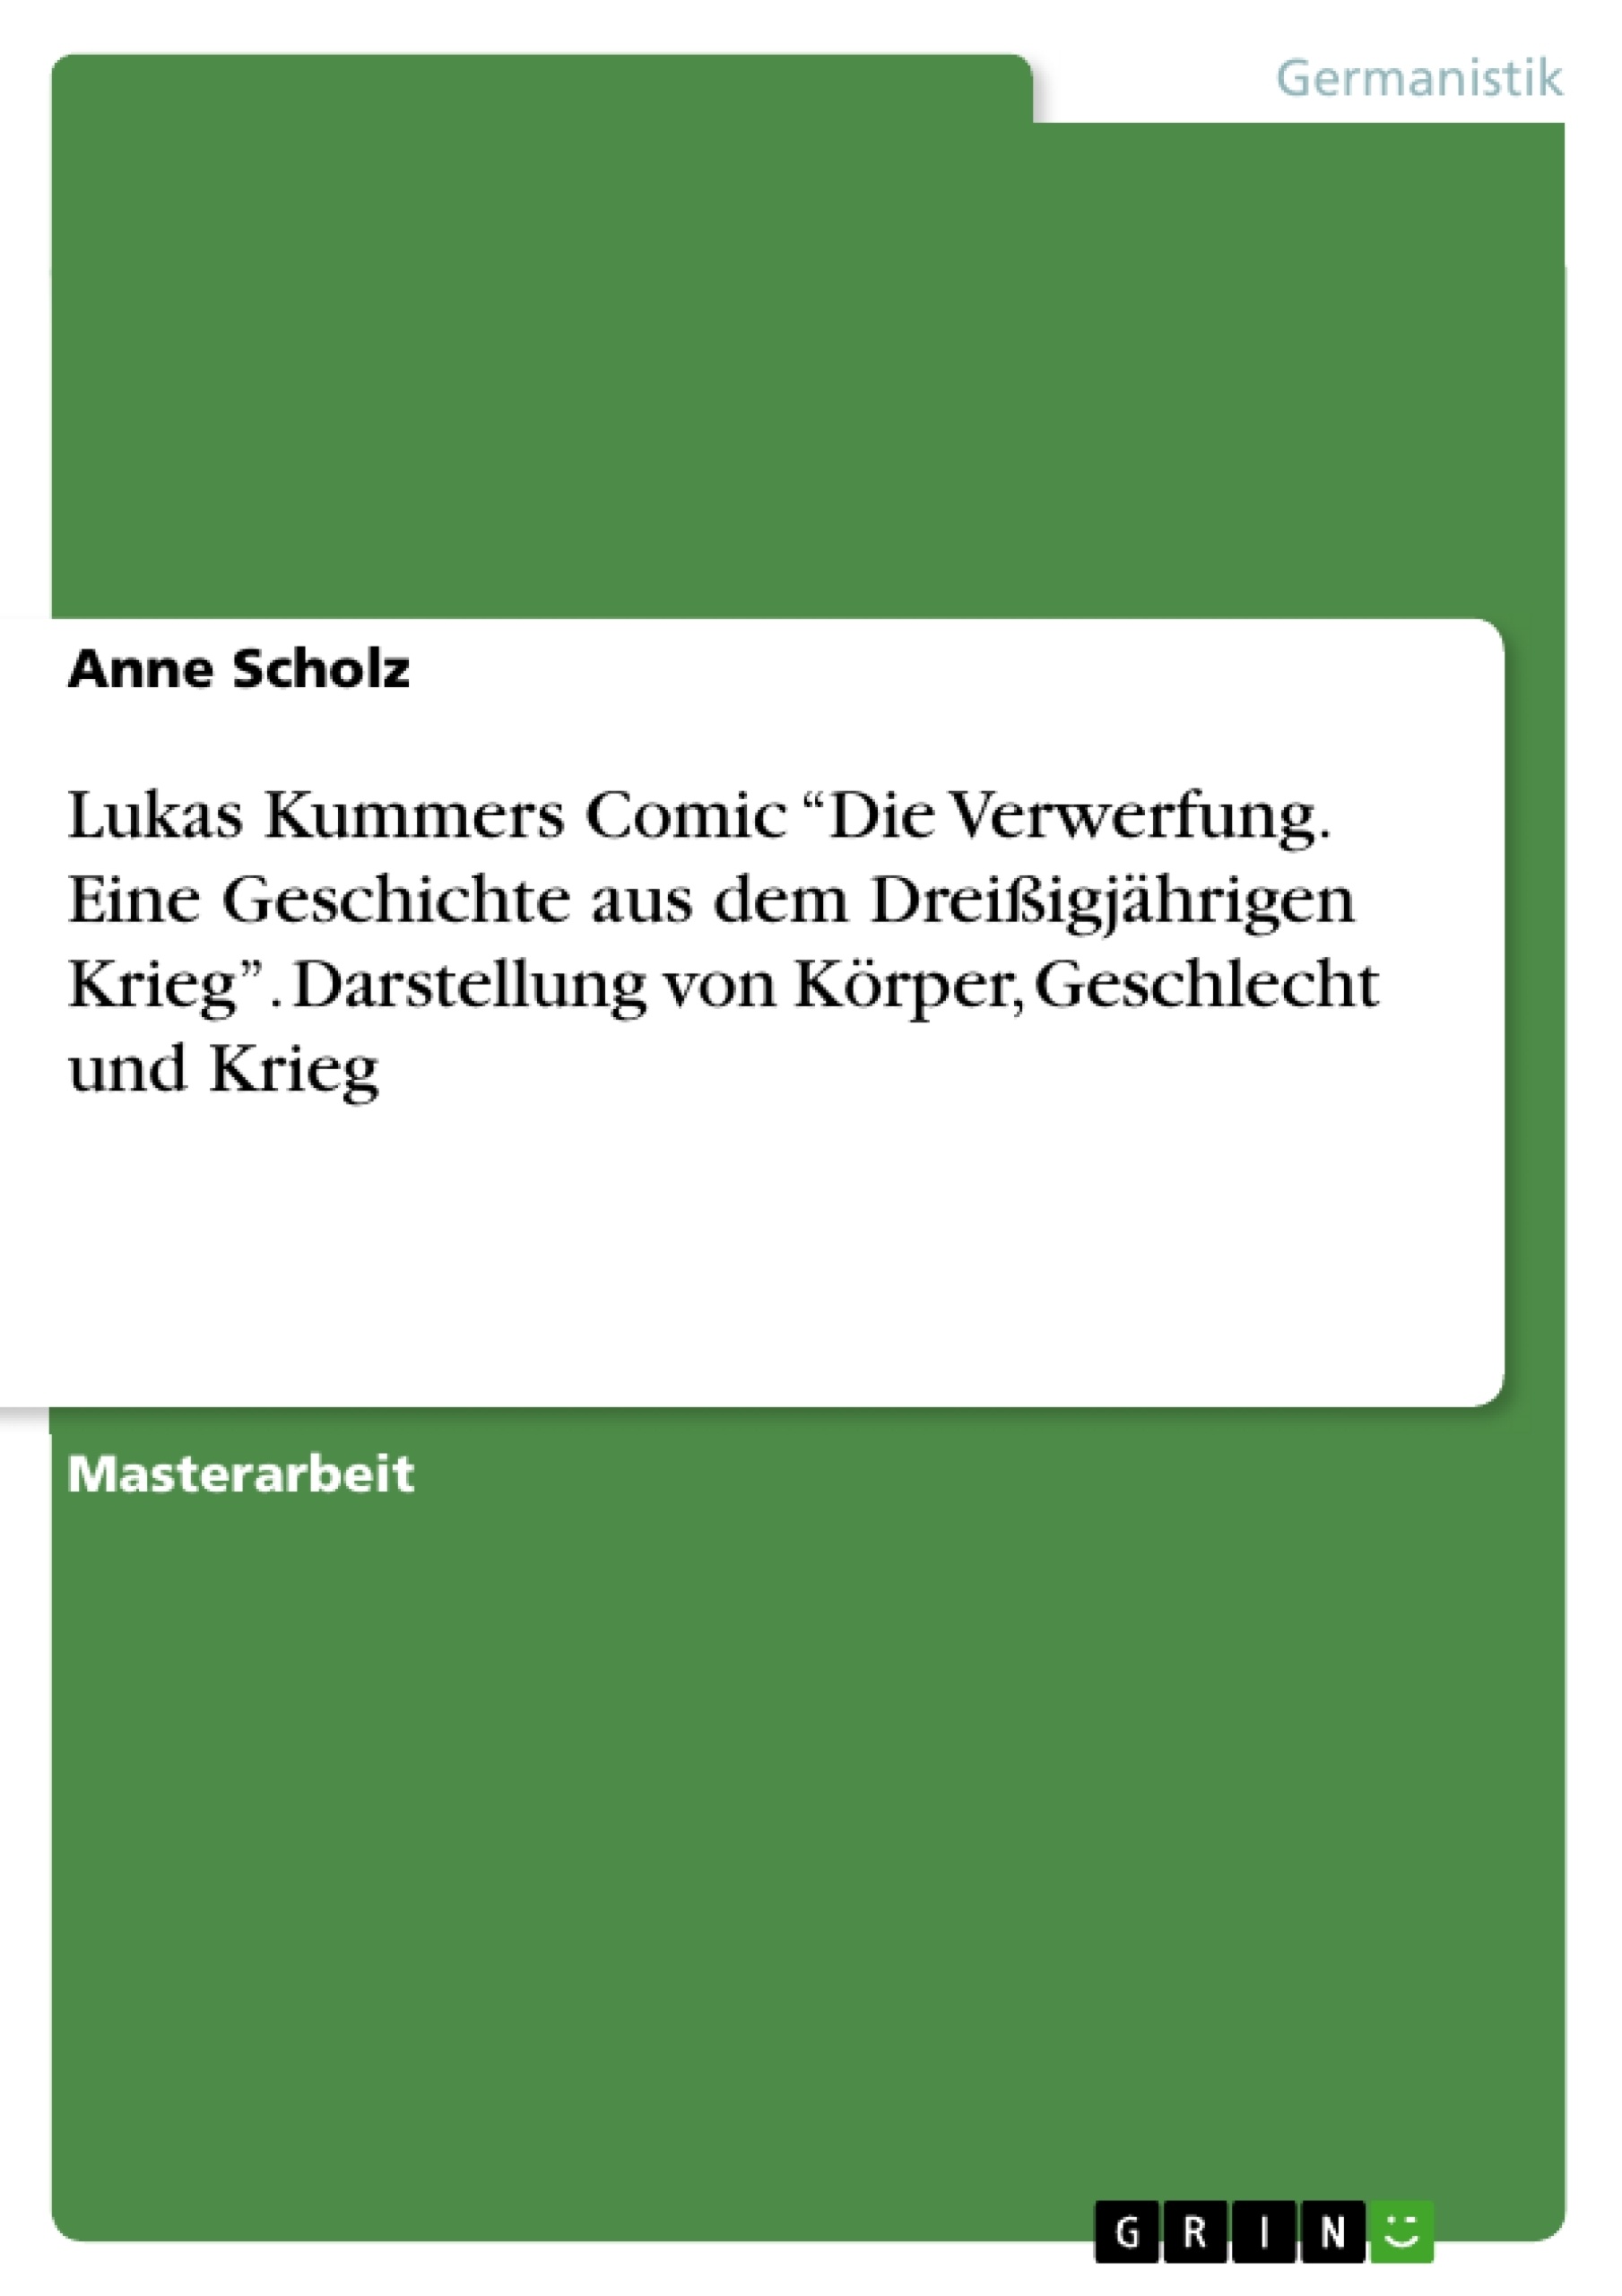 Titre: Lukas Kummers Comic “Die Verwerfung. Eine Geschichte aus dem Dreißigjährigen Krieg”. Darstellung von Körper, Geschlecht und Krieg